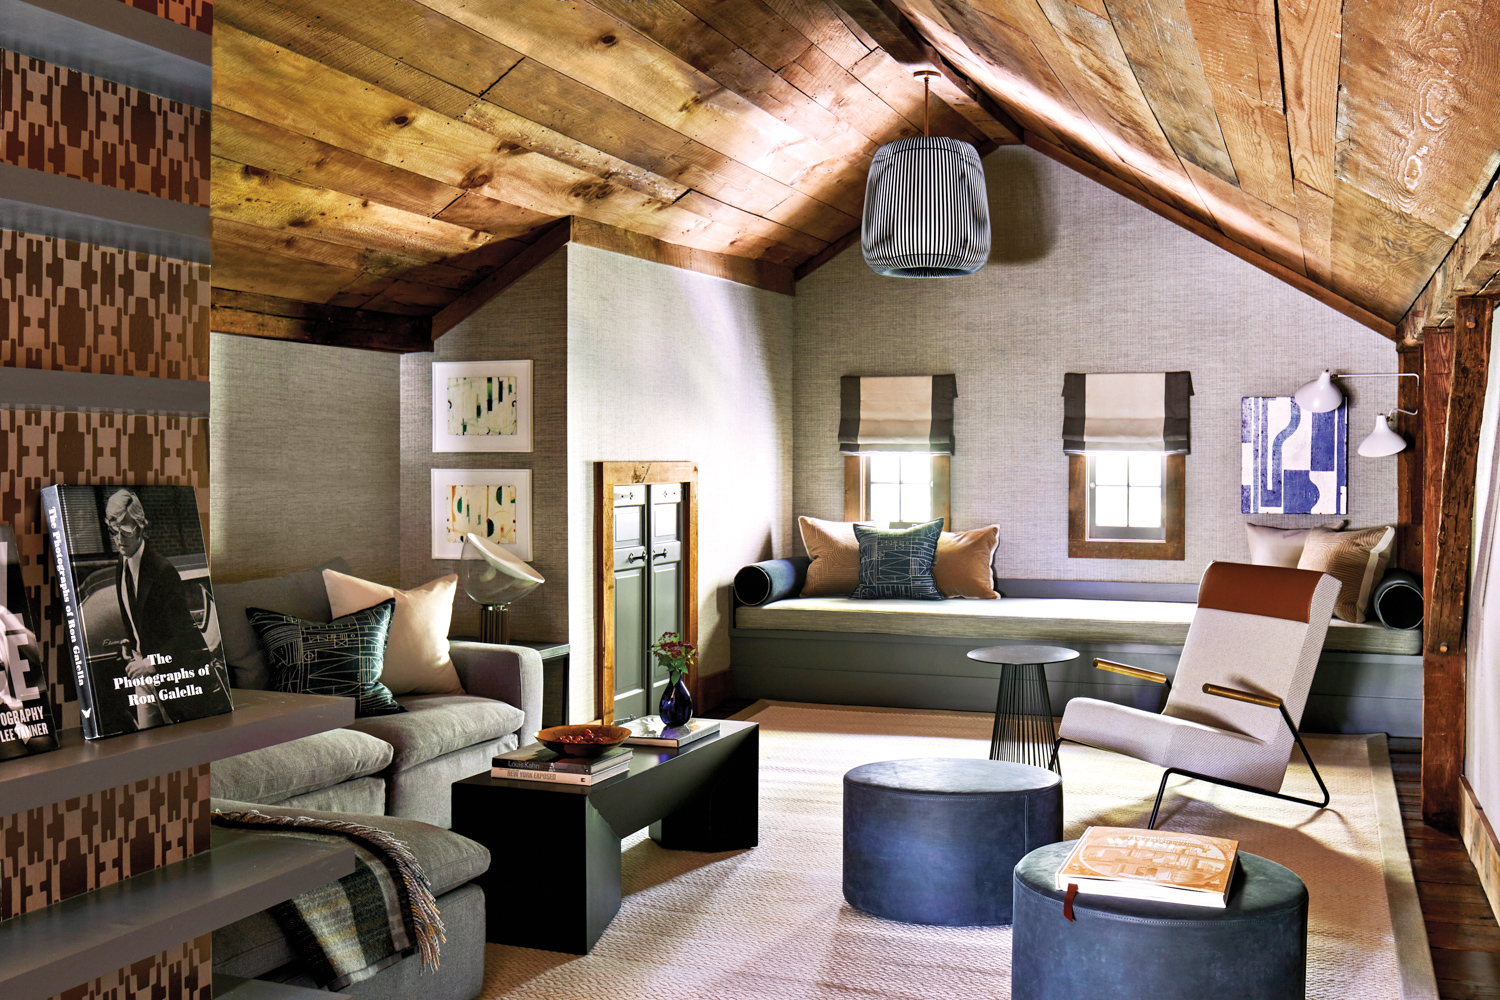 The Cozy Attic That Masters Multipurpose Room Design